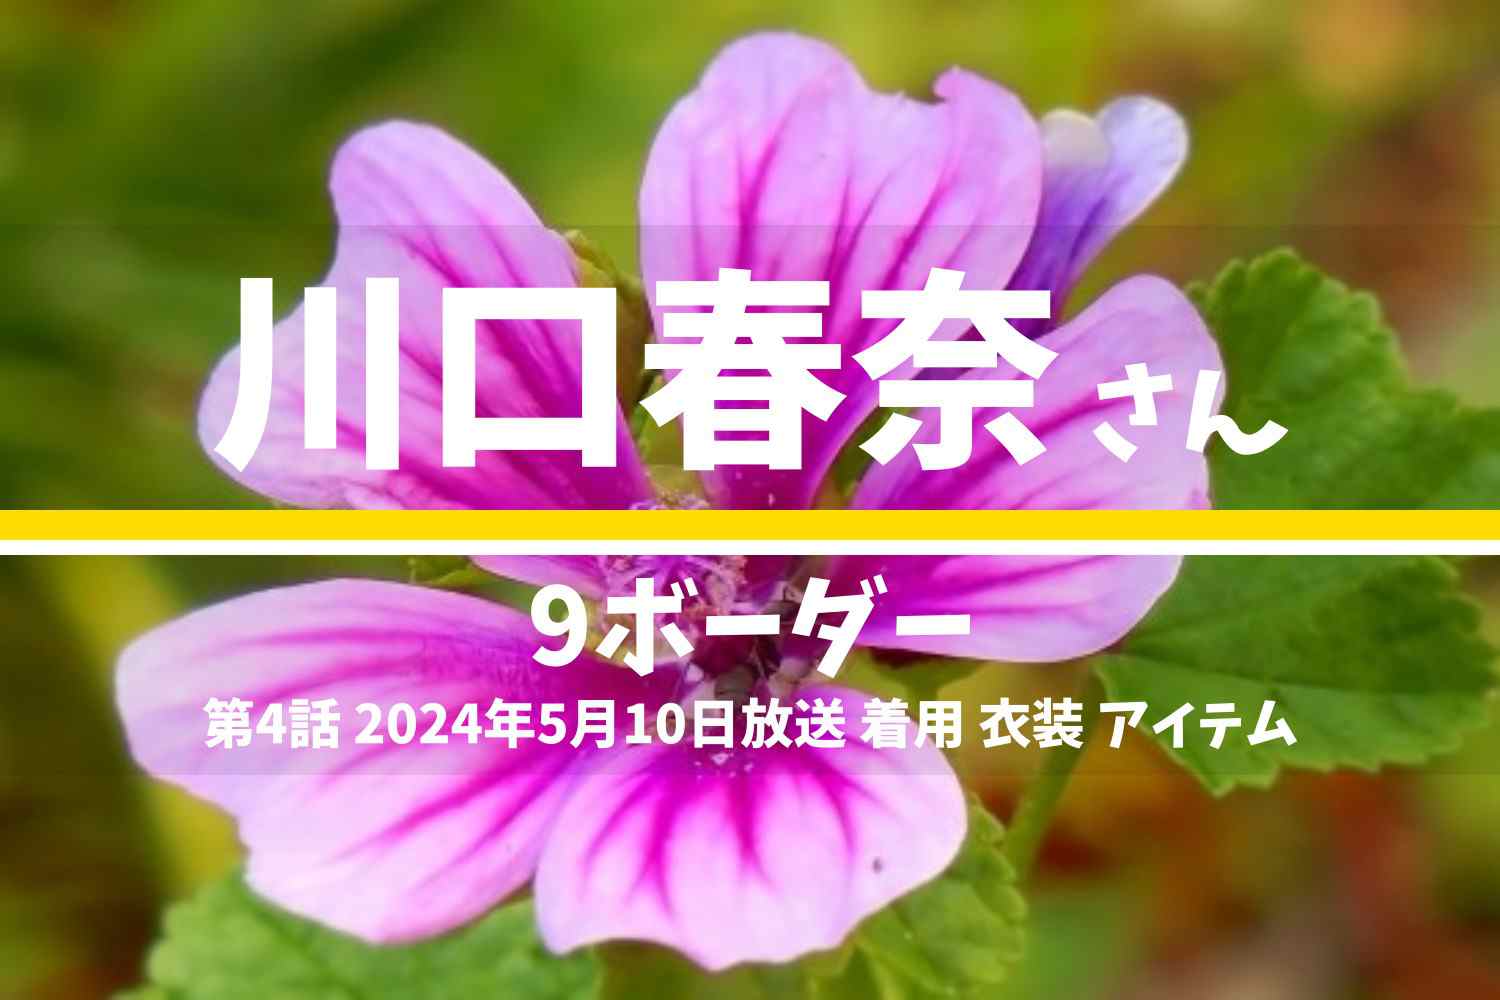 9ボーダー 川口春奈さん テレビドラマ 衣装 2024年5月10日放送